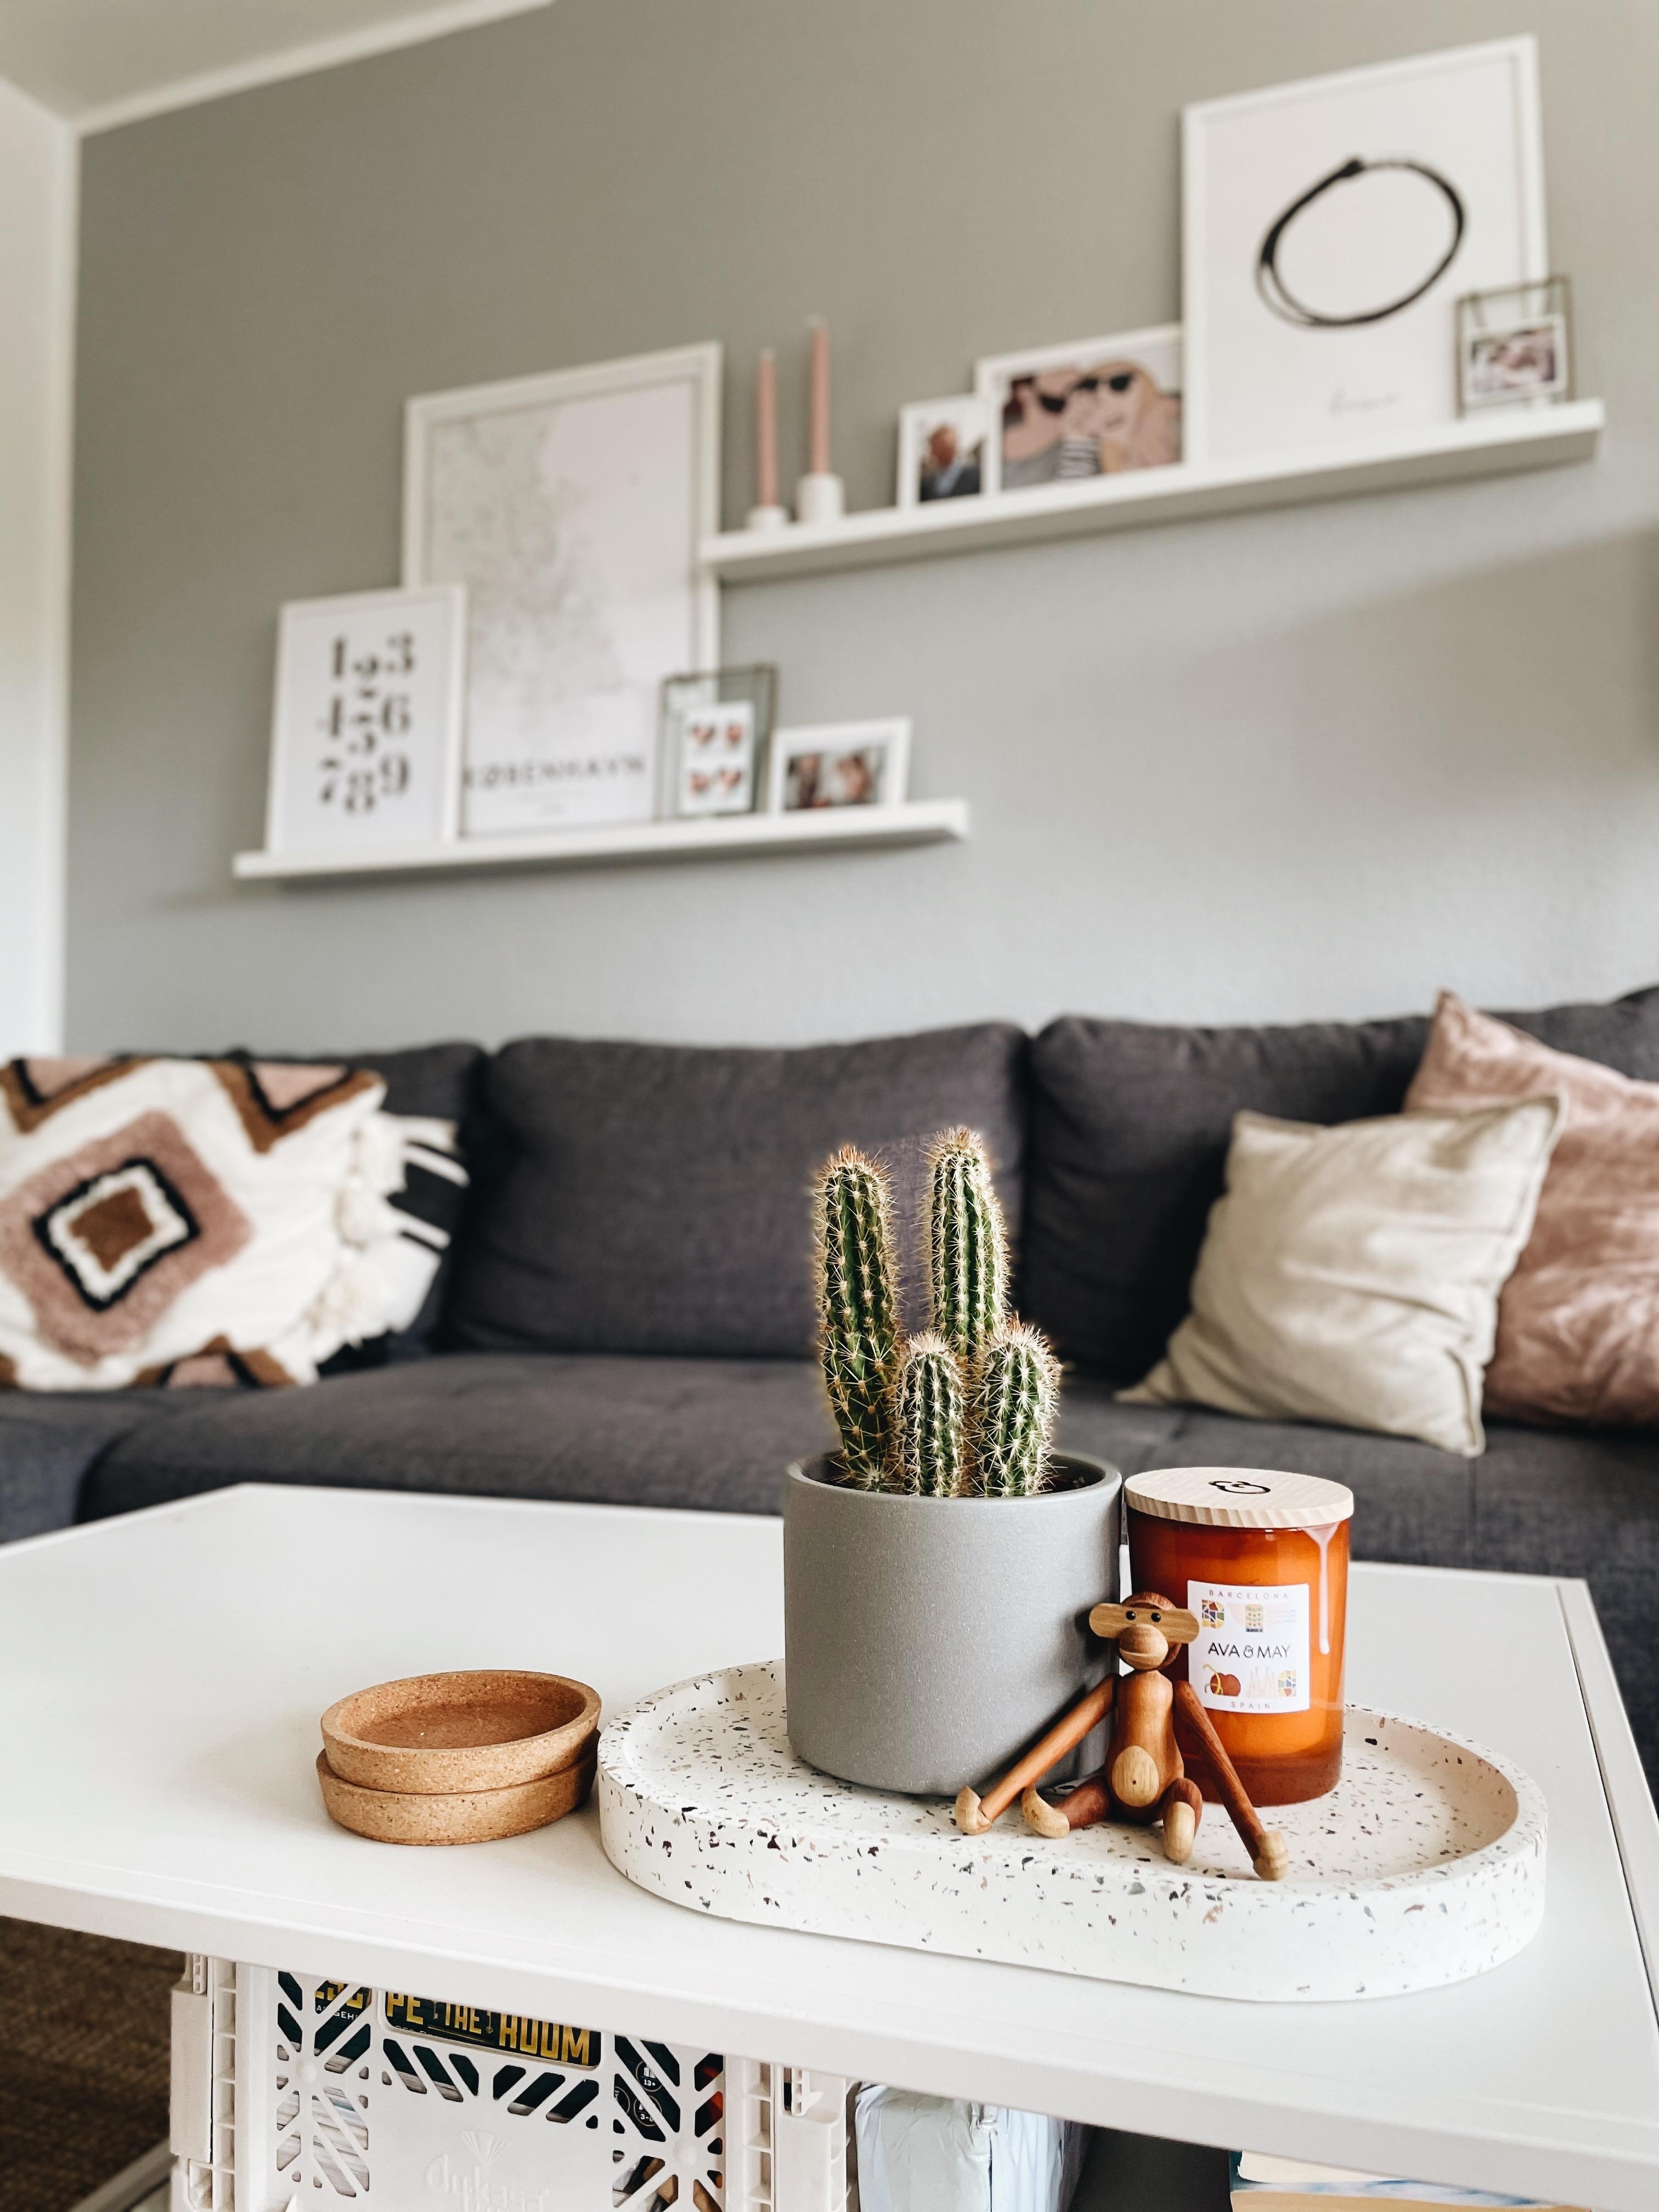 🐒
#wohnzimmer #couch #bilderleisten #couchstyle #hyggehome #pflanzen #kaktus 